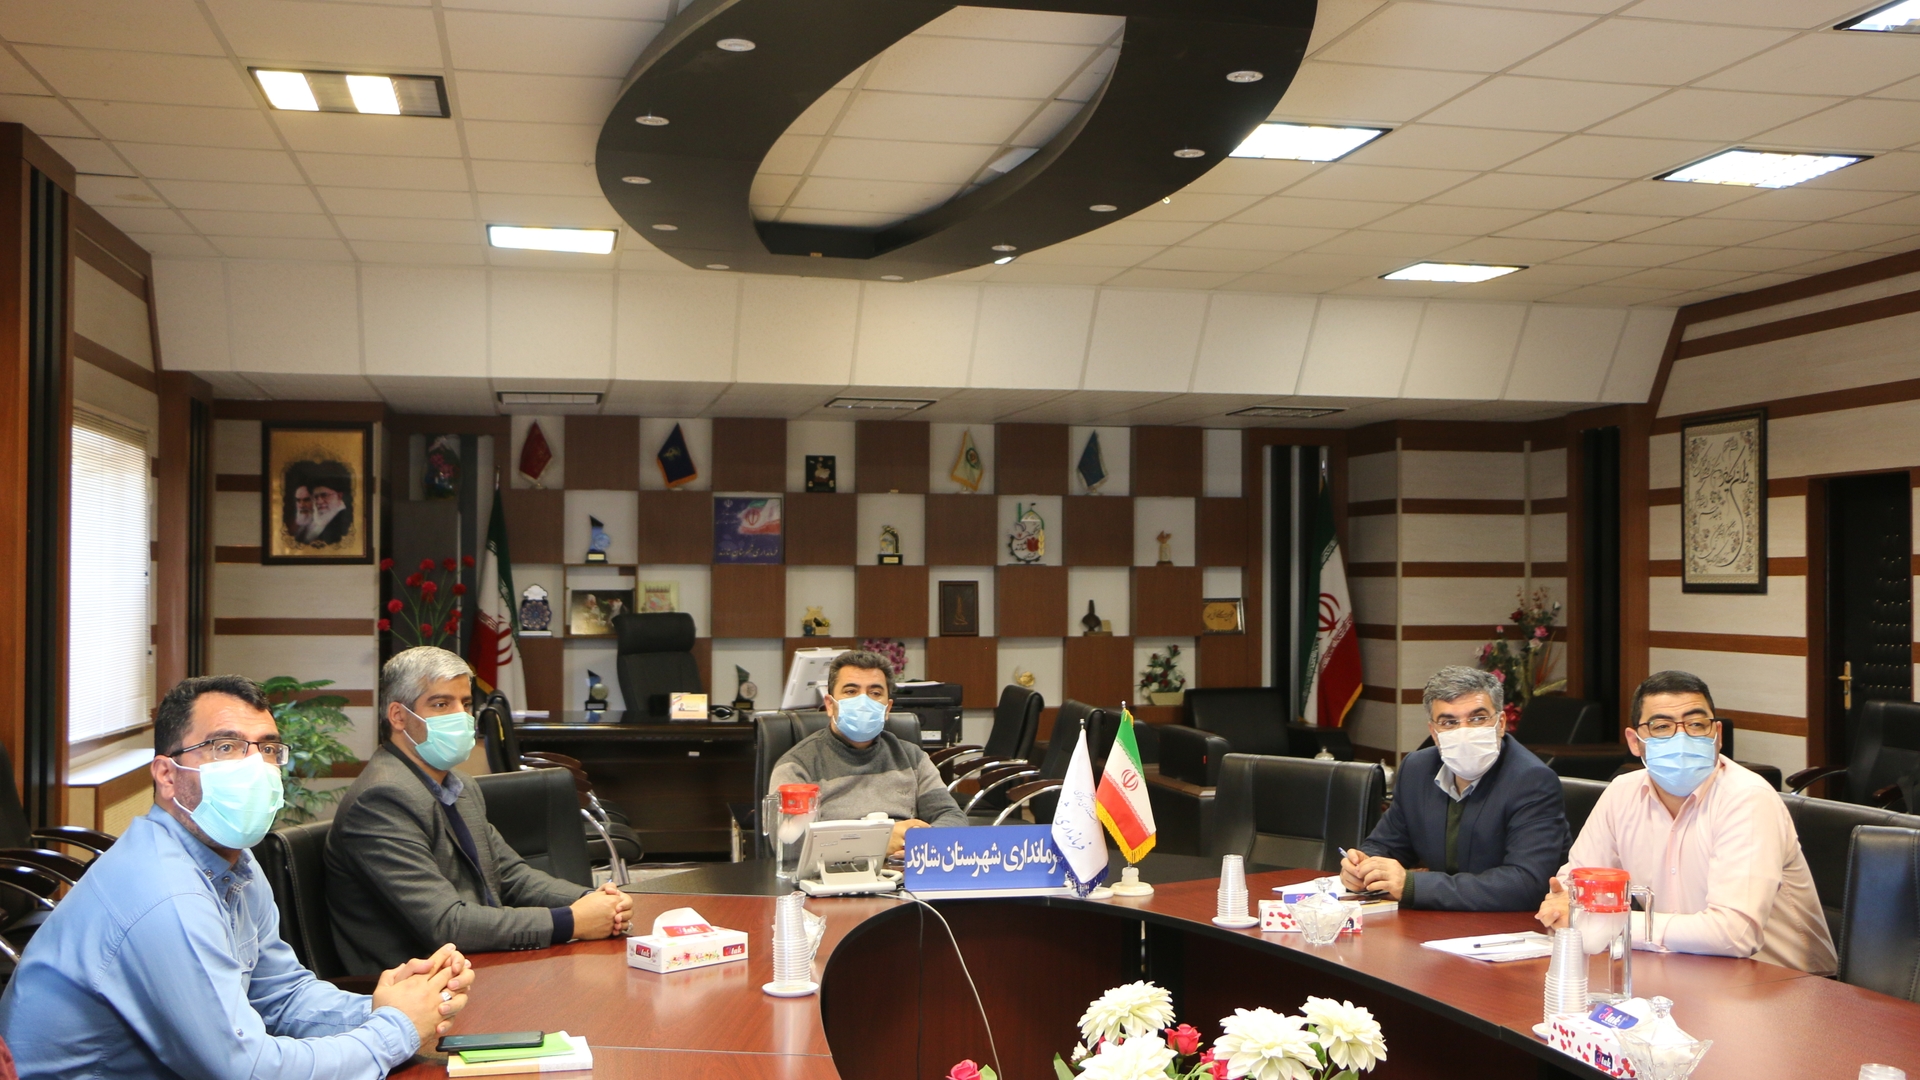 برگزاری جلسه هیات تطبیق مصوبات شورای اسلامی شهرهای شهرستان شازند